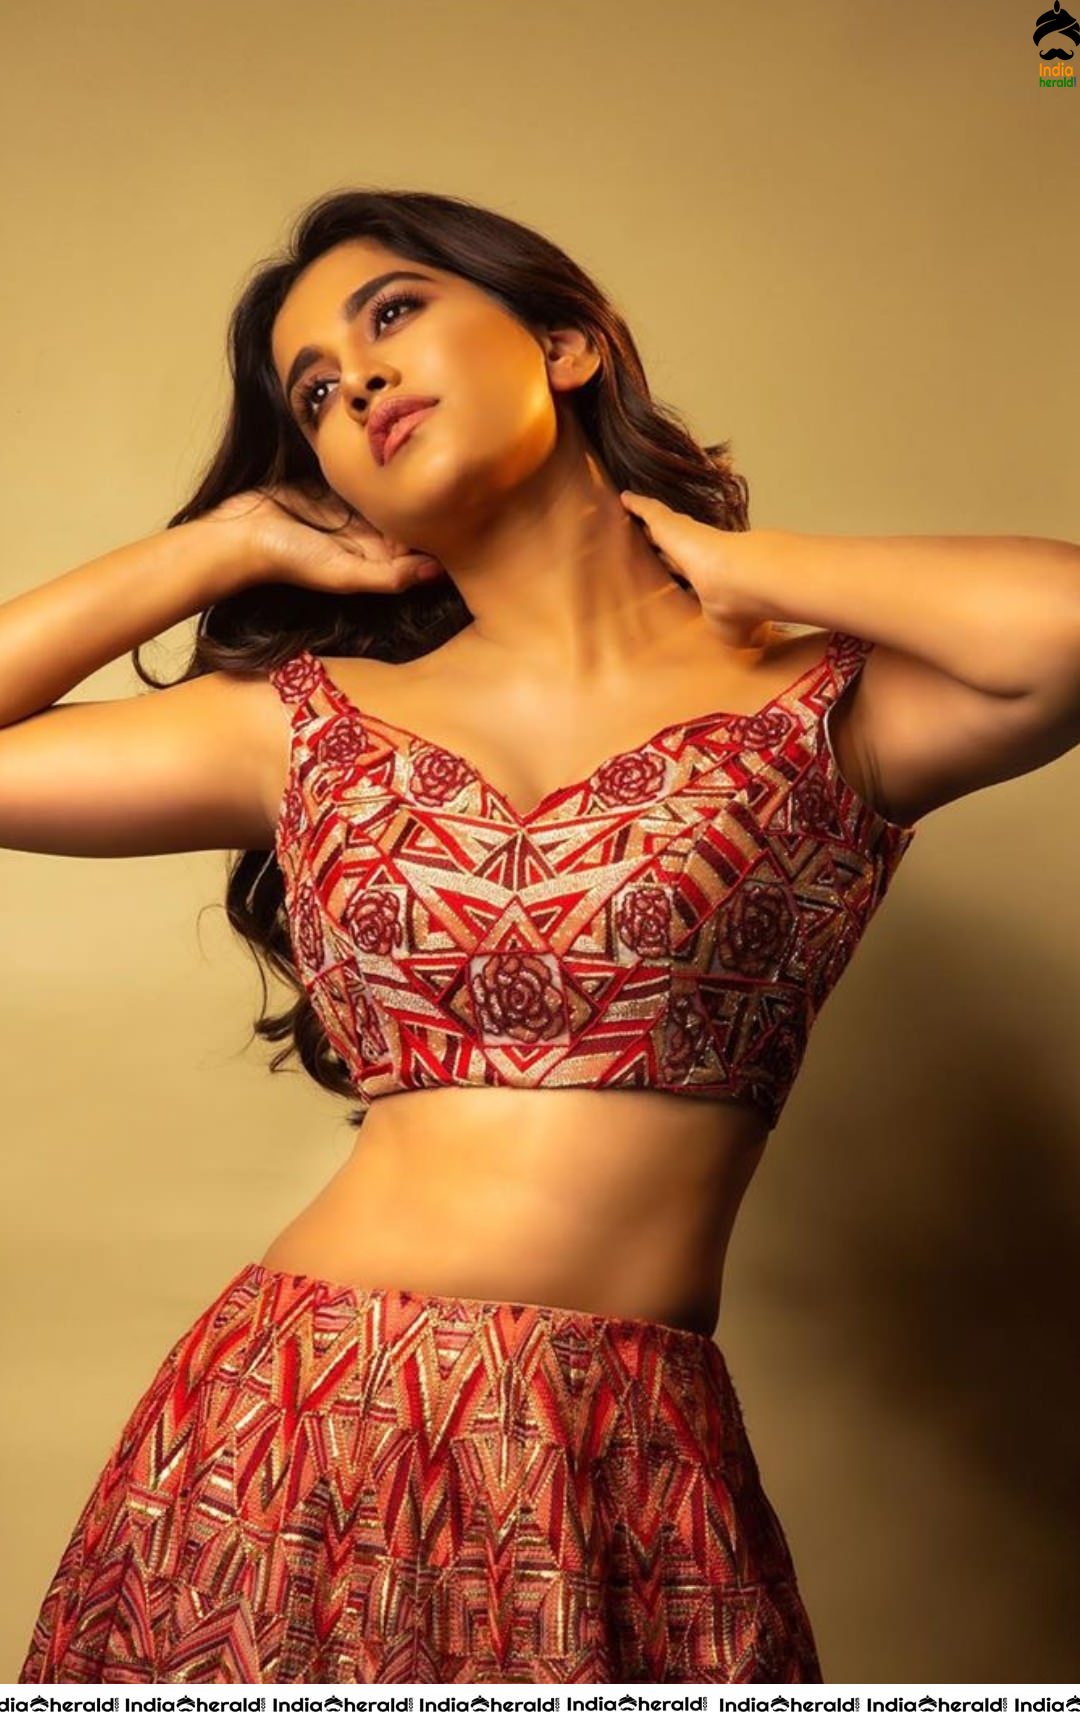 Nabha Natesh Shows her Sexy waist in this Latest Hot Photoshoot